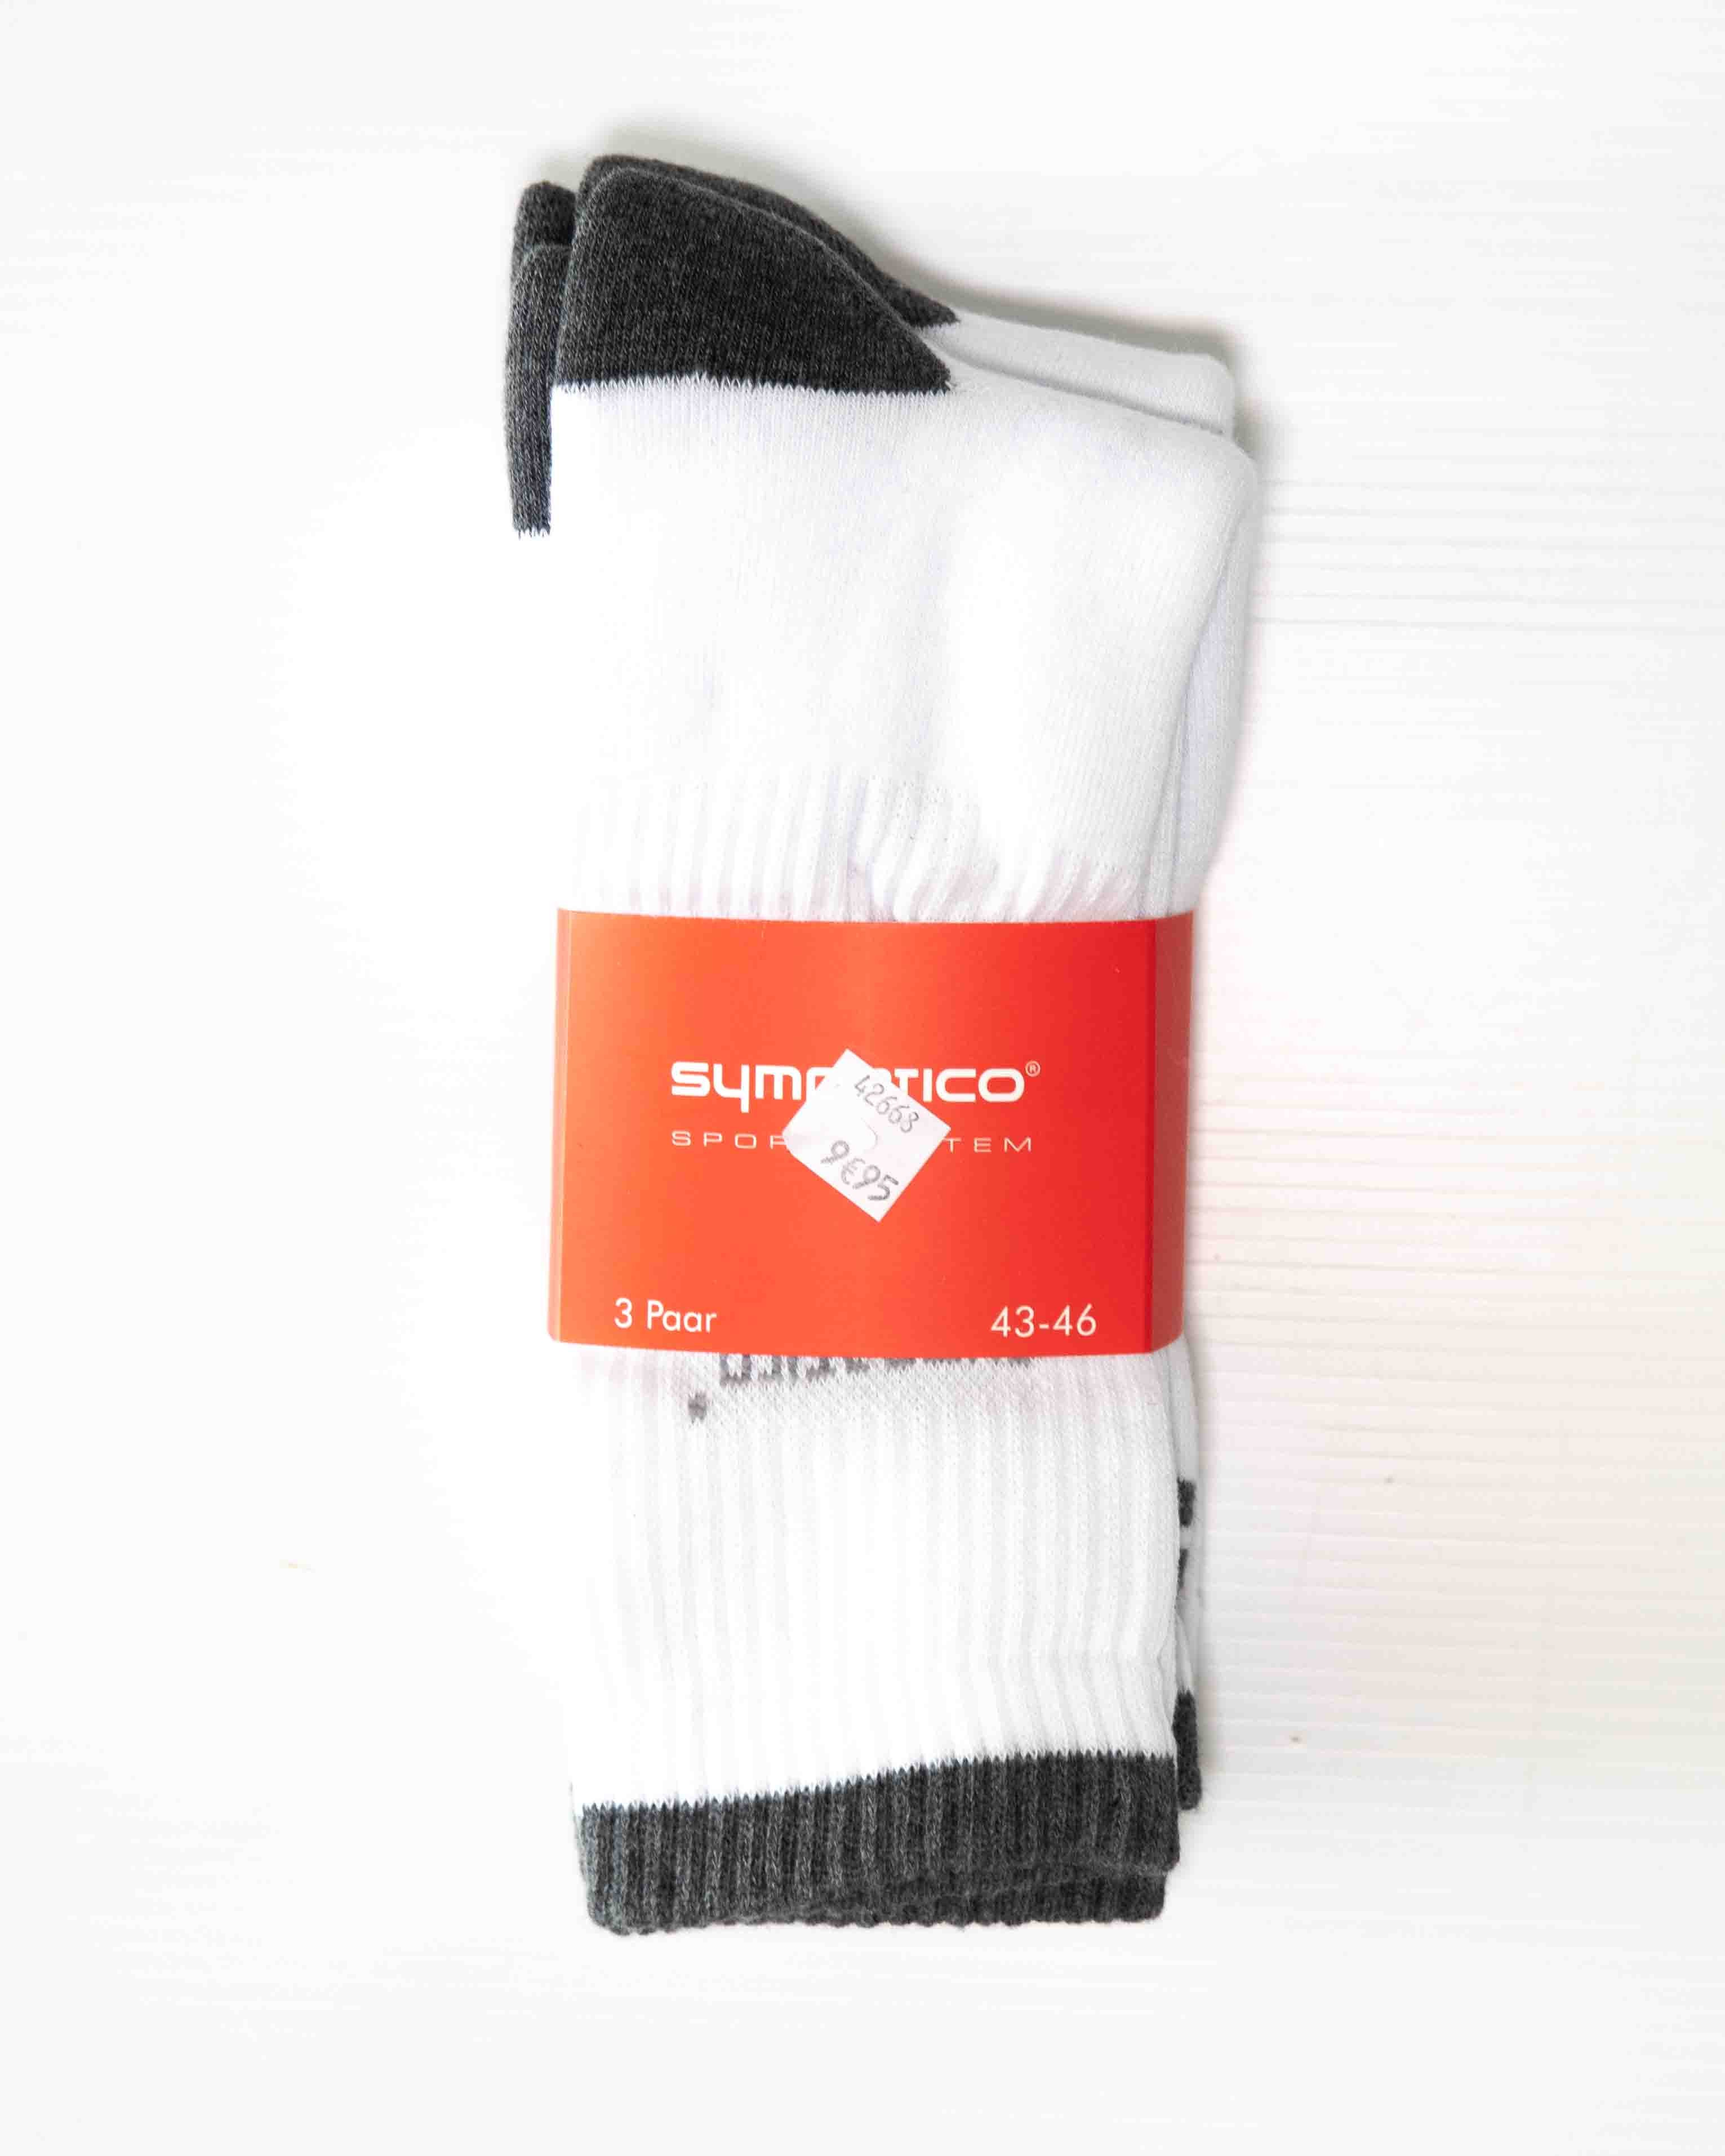 Le pack de 3 chaussettes de sport Sympatico, coloris blanc.